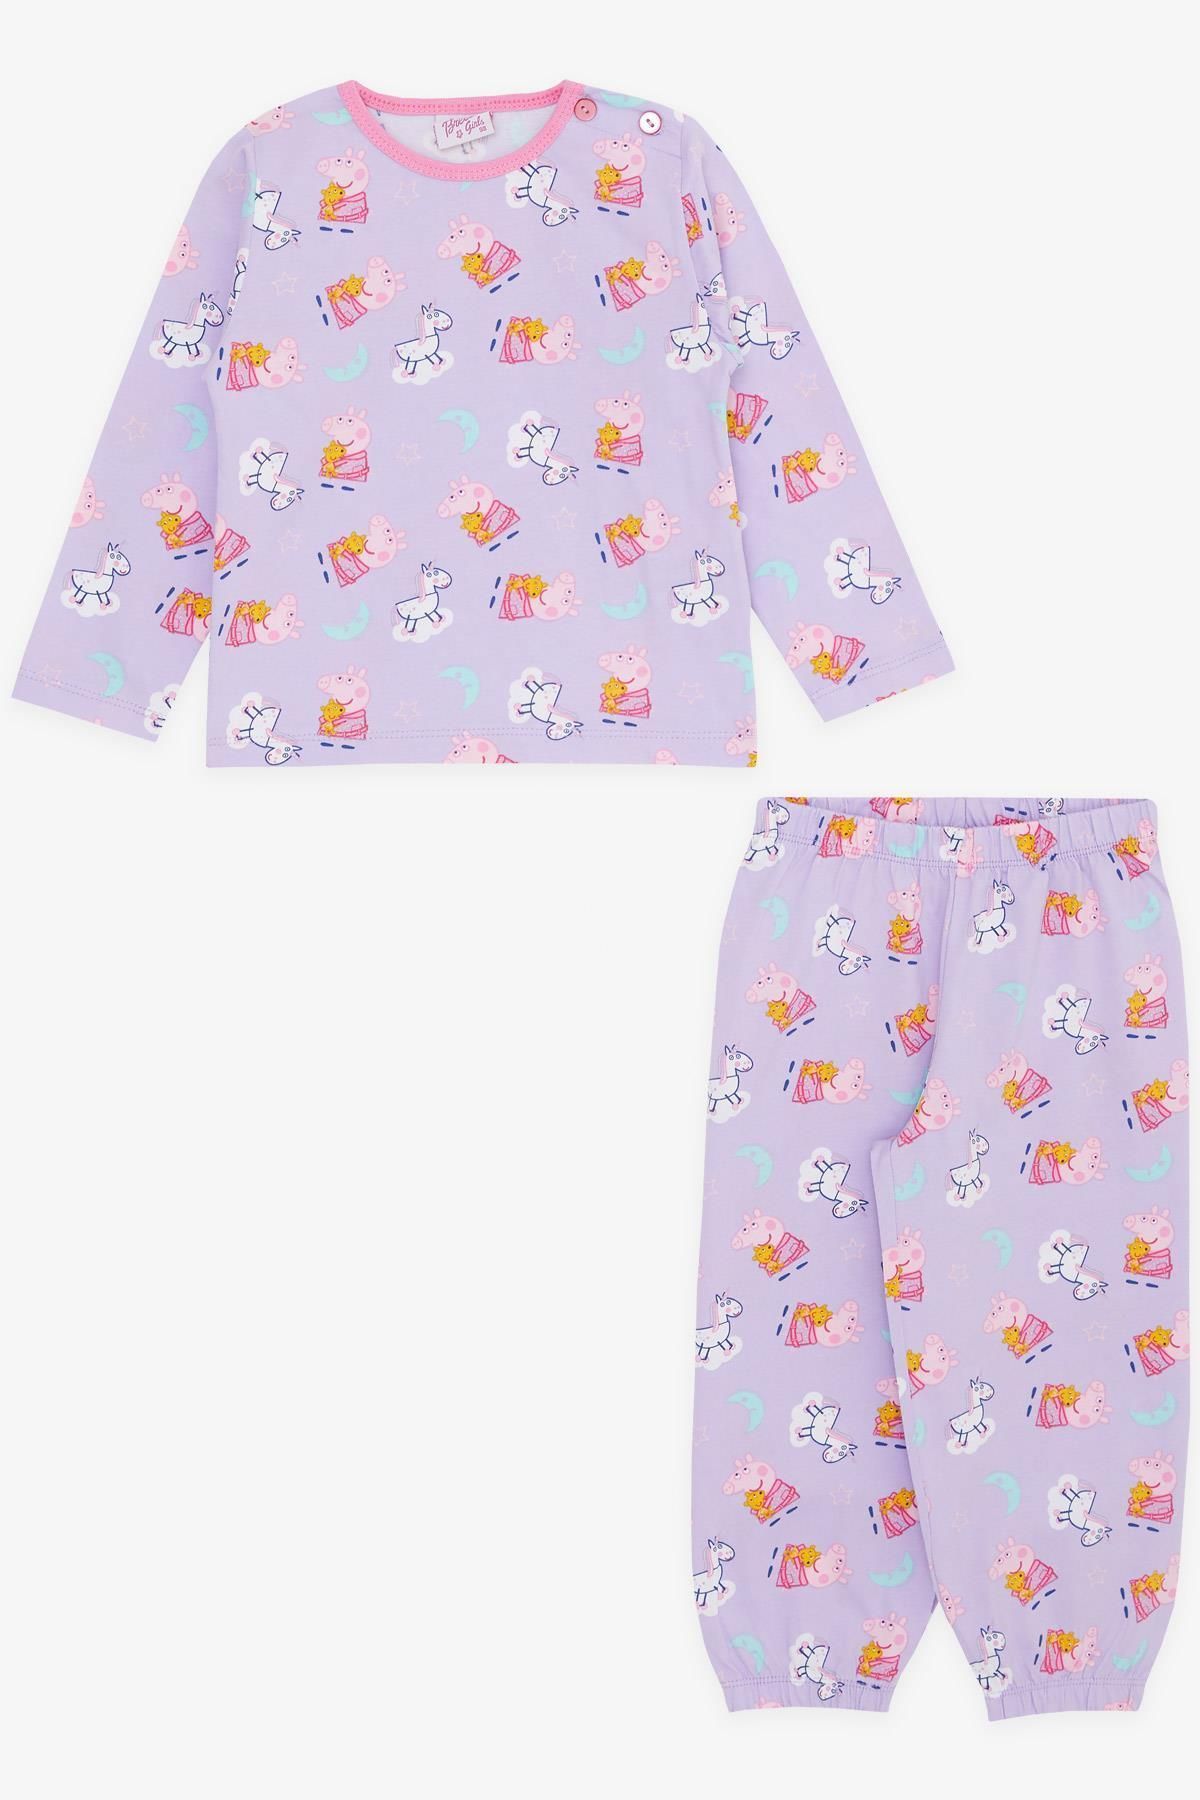 Breeze Kız Bebek Pijama Takımı Sevimli Domuzcuk Desenli 9 Ay-3 Yaş, Lila